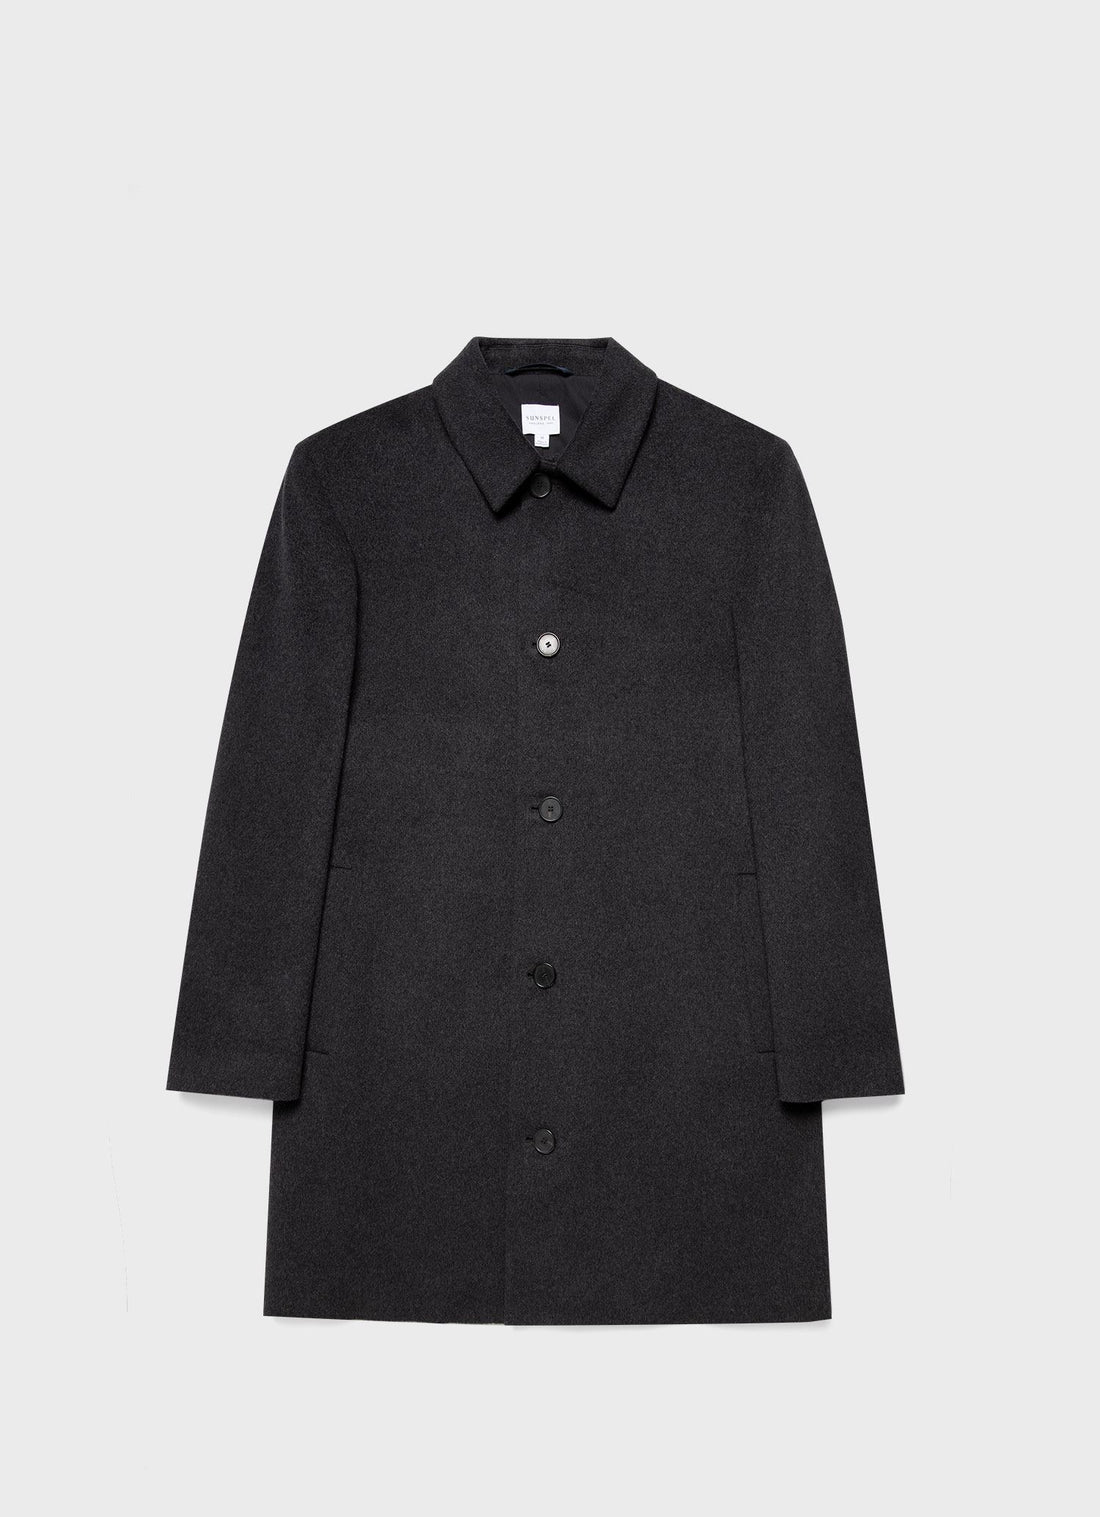 Men's Cashmere Coat in Charcoal Melange